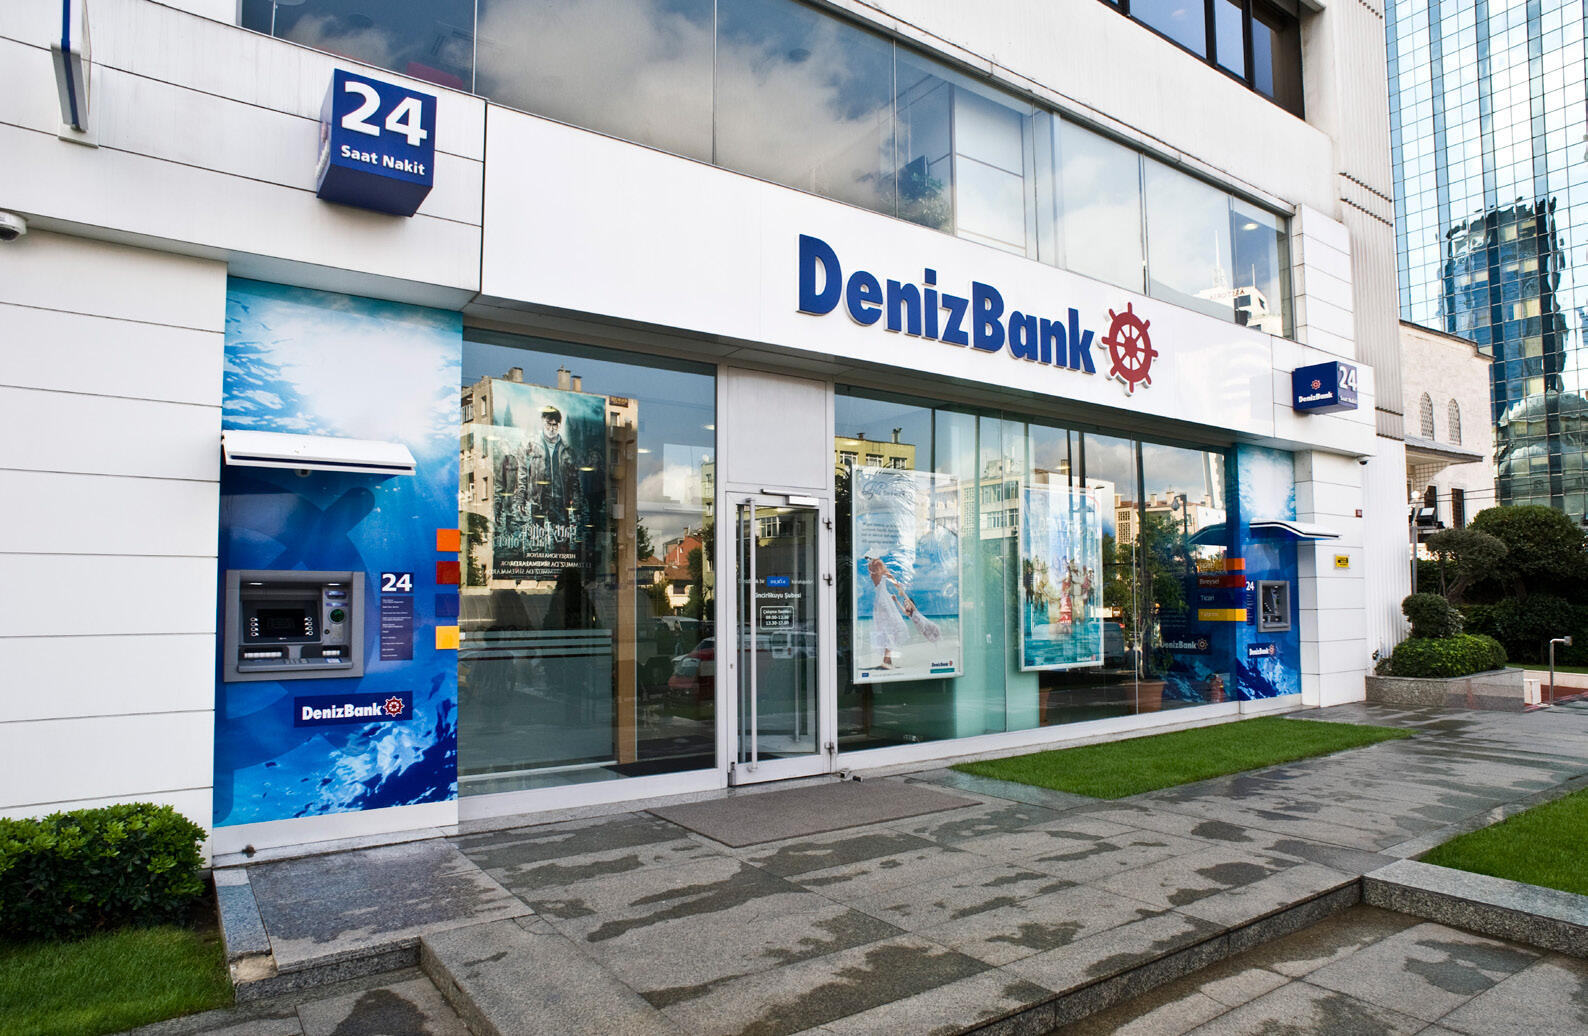 DenizBank в Турции ужесточил правила открытия счетов для россиян